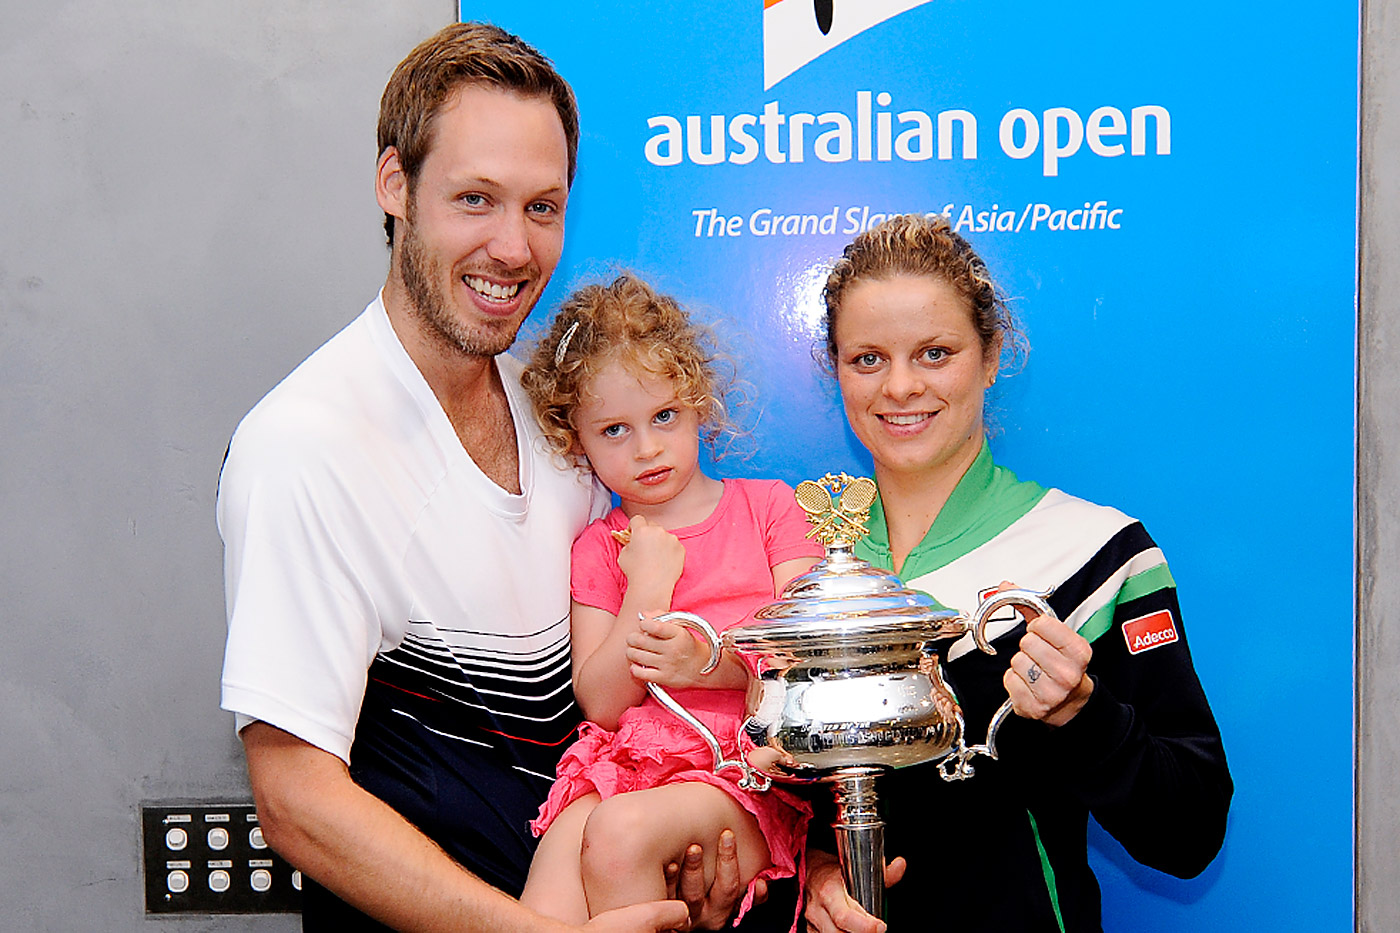 http://1.bp.blogspot.com/_SsxoEWOEV3w/TUkKU94479I/AAAAAAAAArU/MRoDzqUuojo/s1600/Australian-open-2011-winner-Kim-Clijsters-with-family.jpg